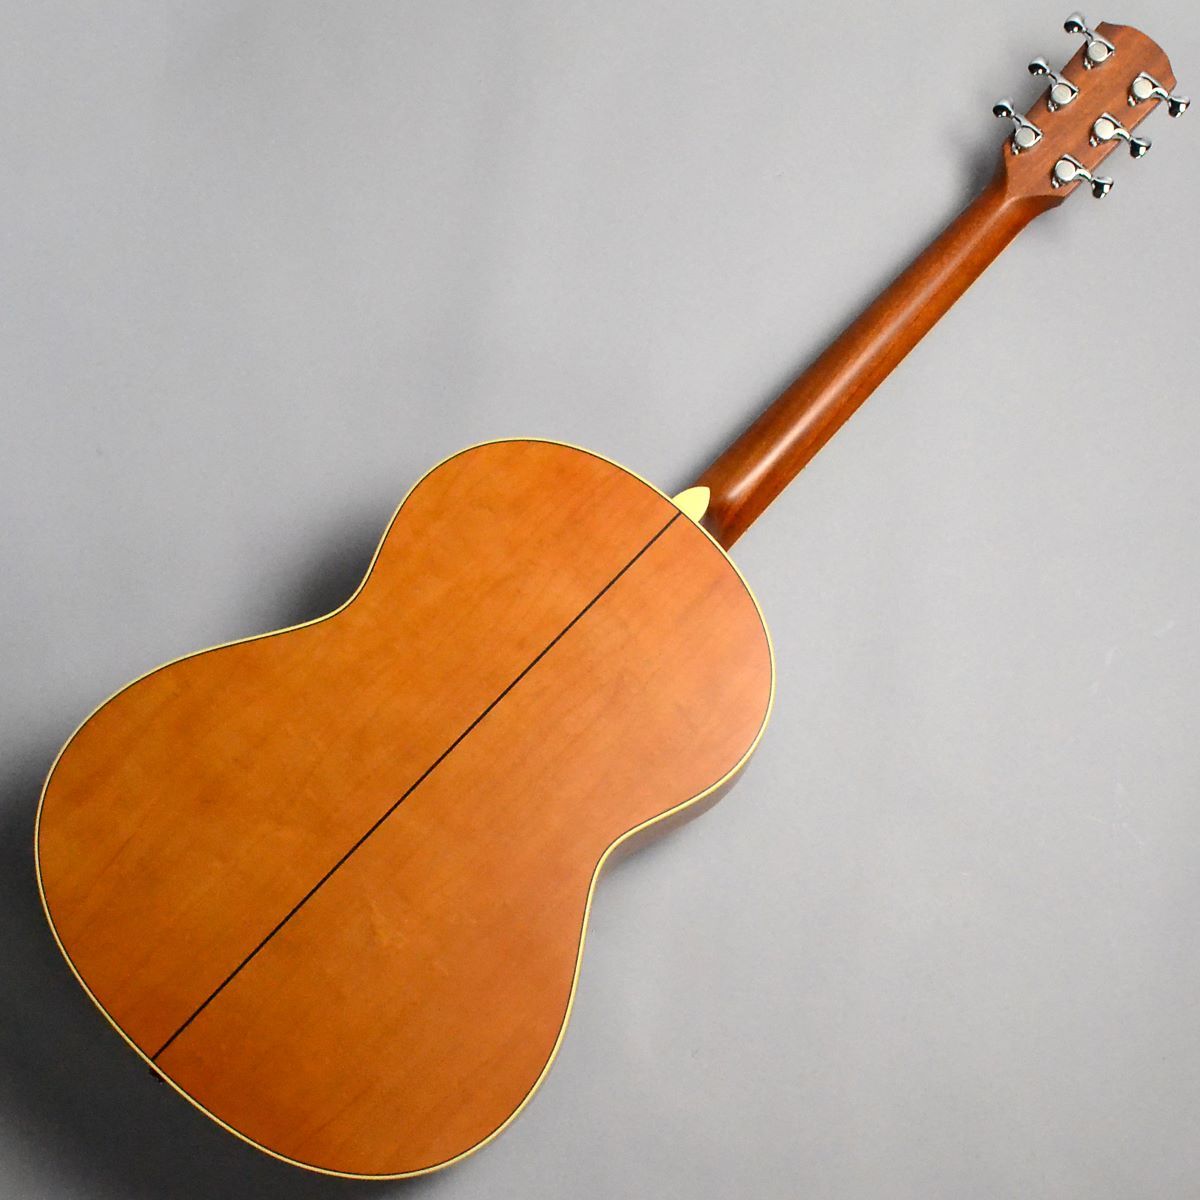 K.Yairi SRF-MA1 Vintage Sunburst アコースティックギター ハード 